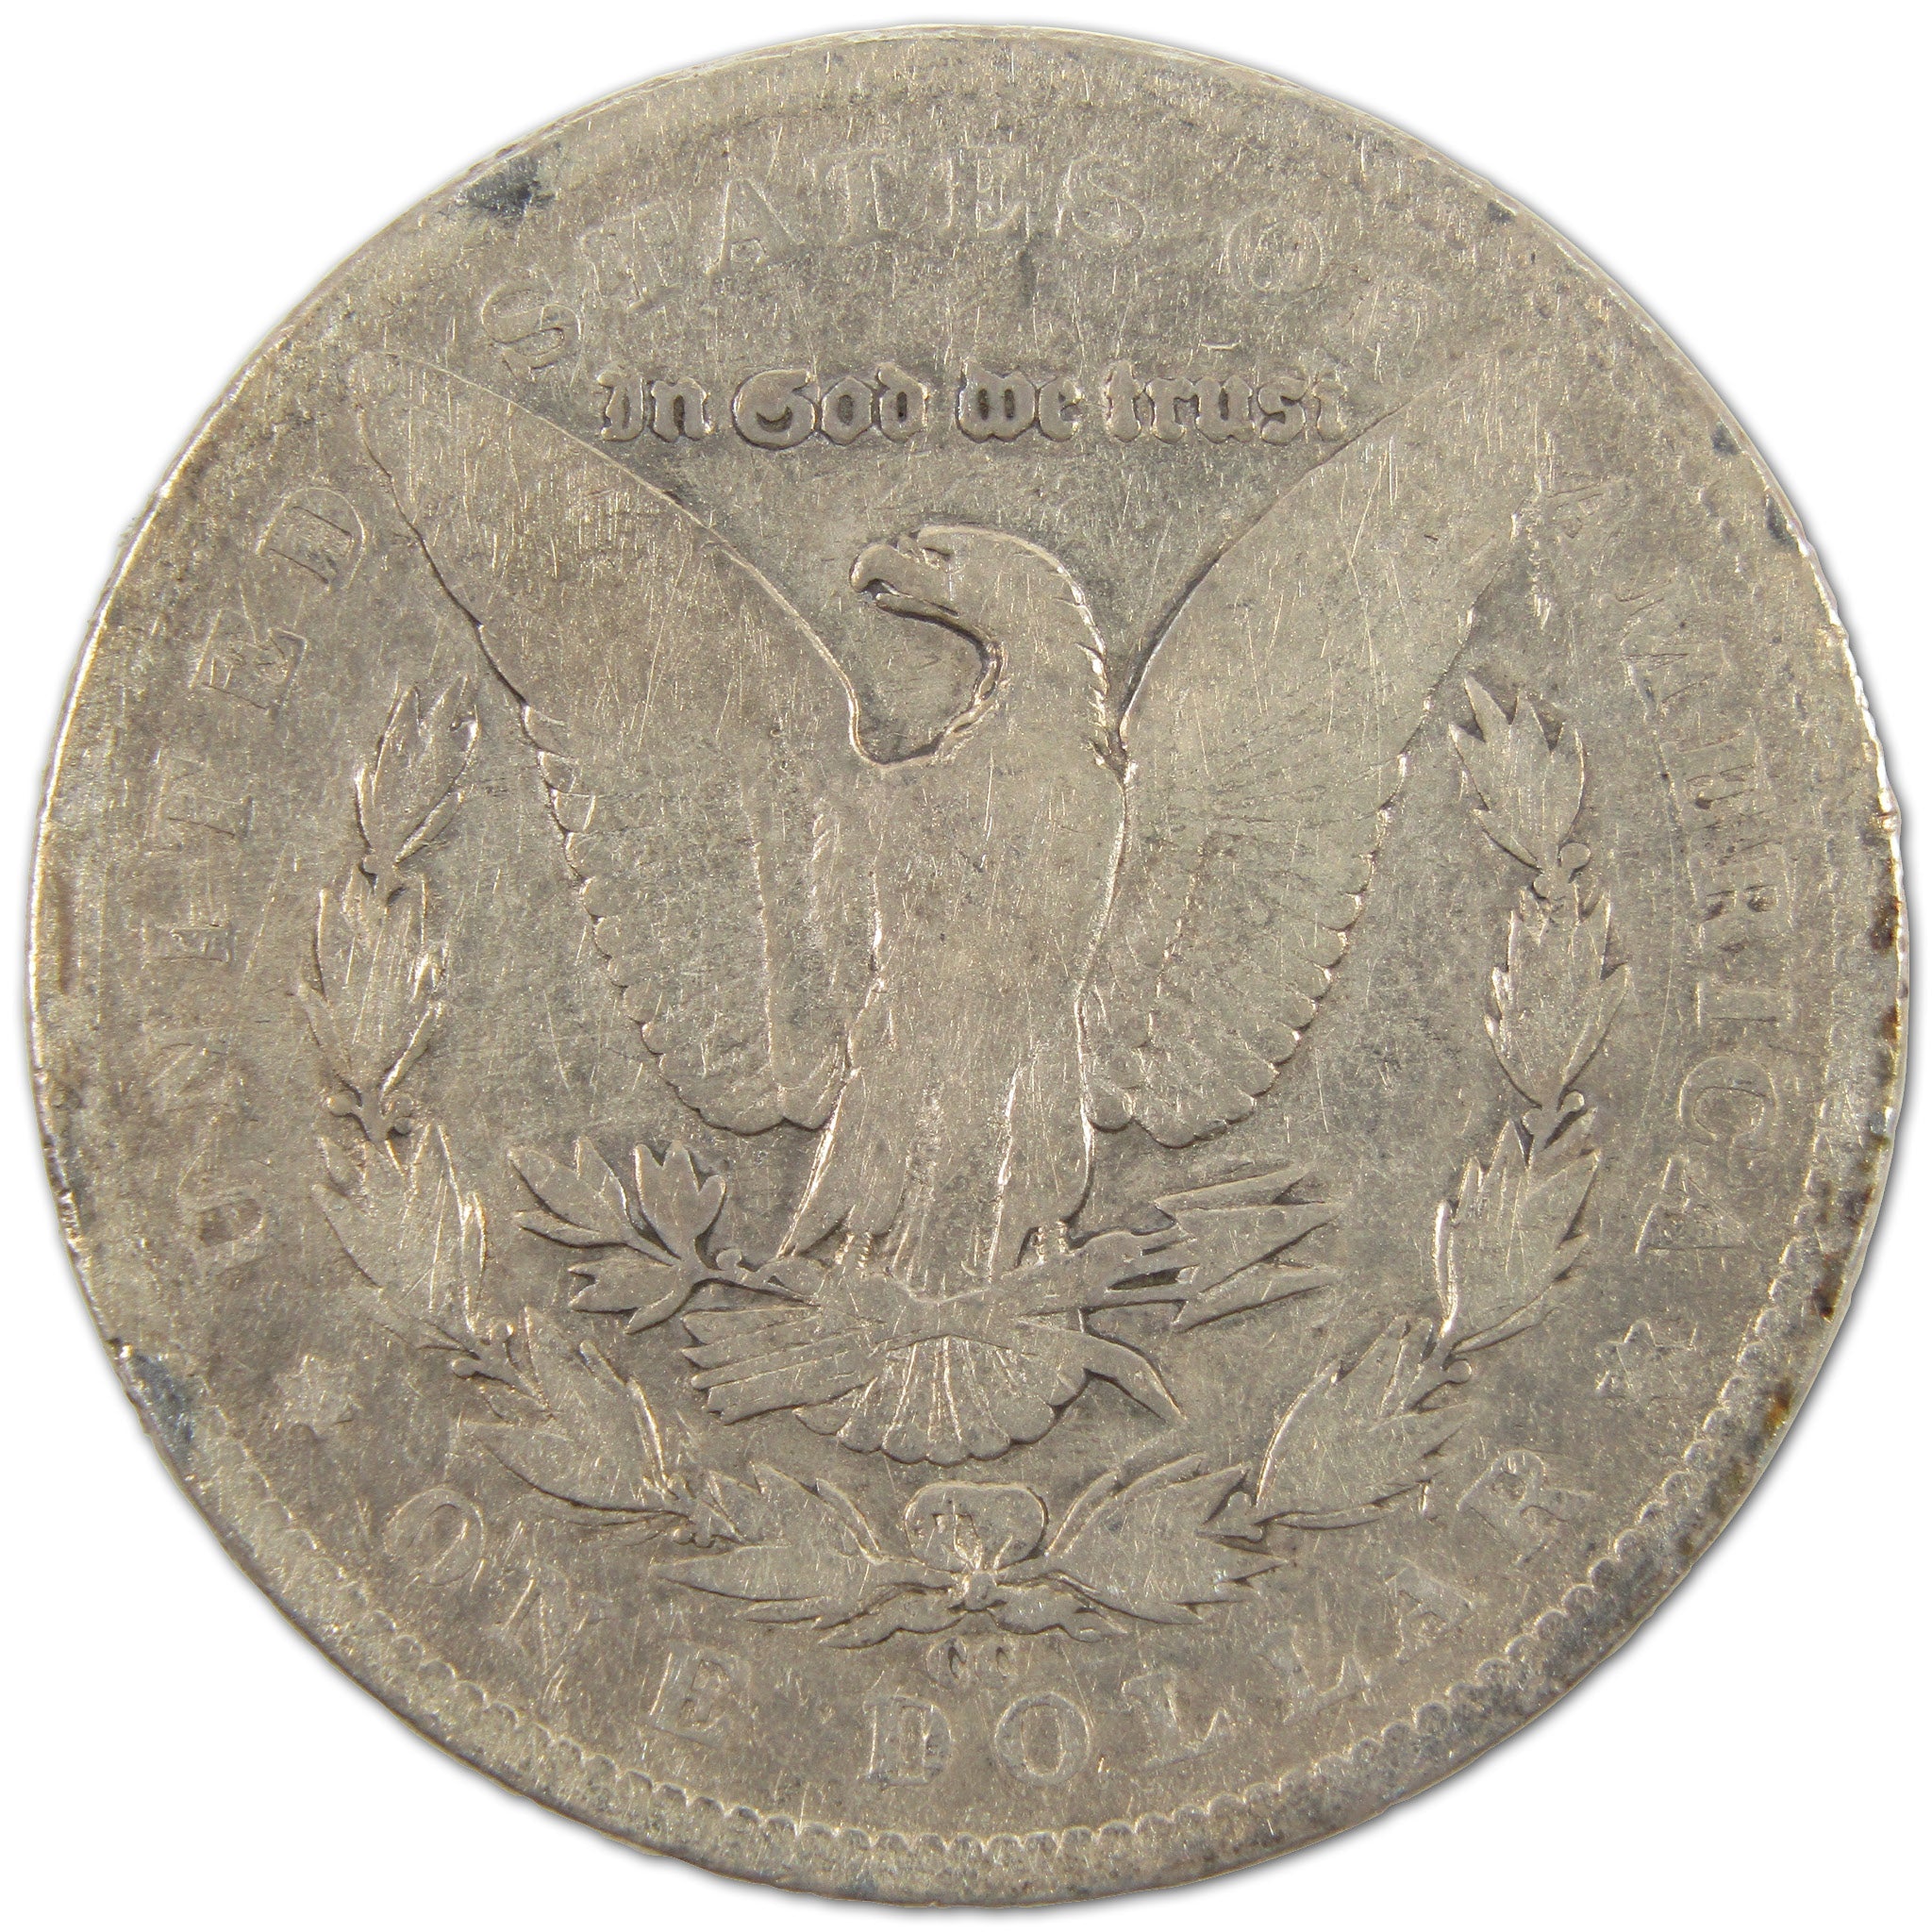 1891 CC Morgan Dollar Silver $1 Coin SKU:I10866 - Morgan coin - Morgan silver dollar - Morgan silver dollar for sale - Profile Coins &amp; Collectibles